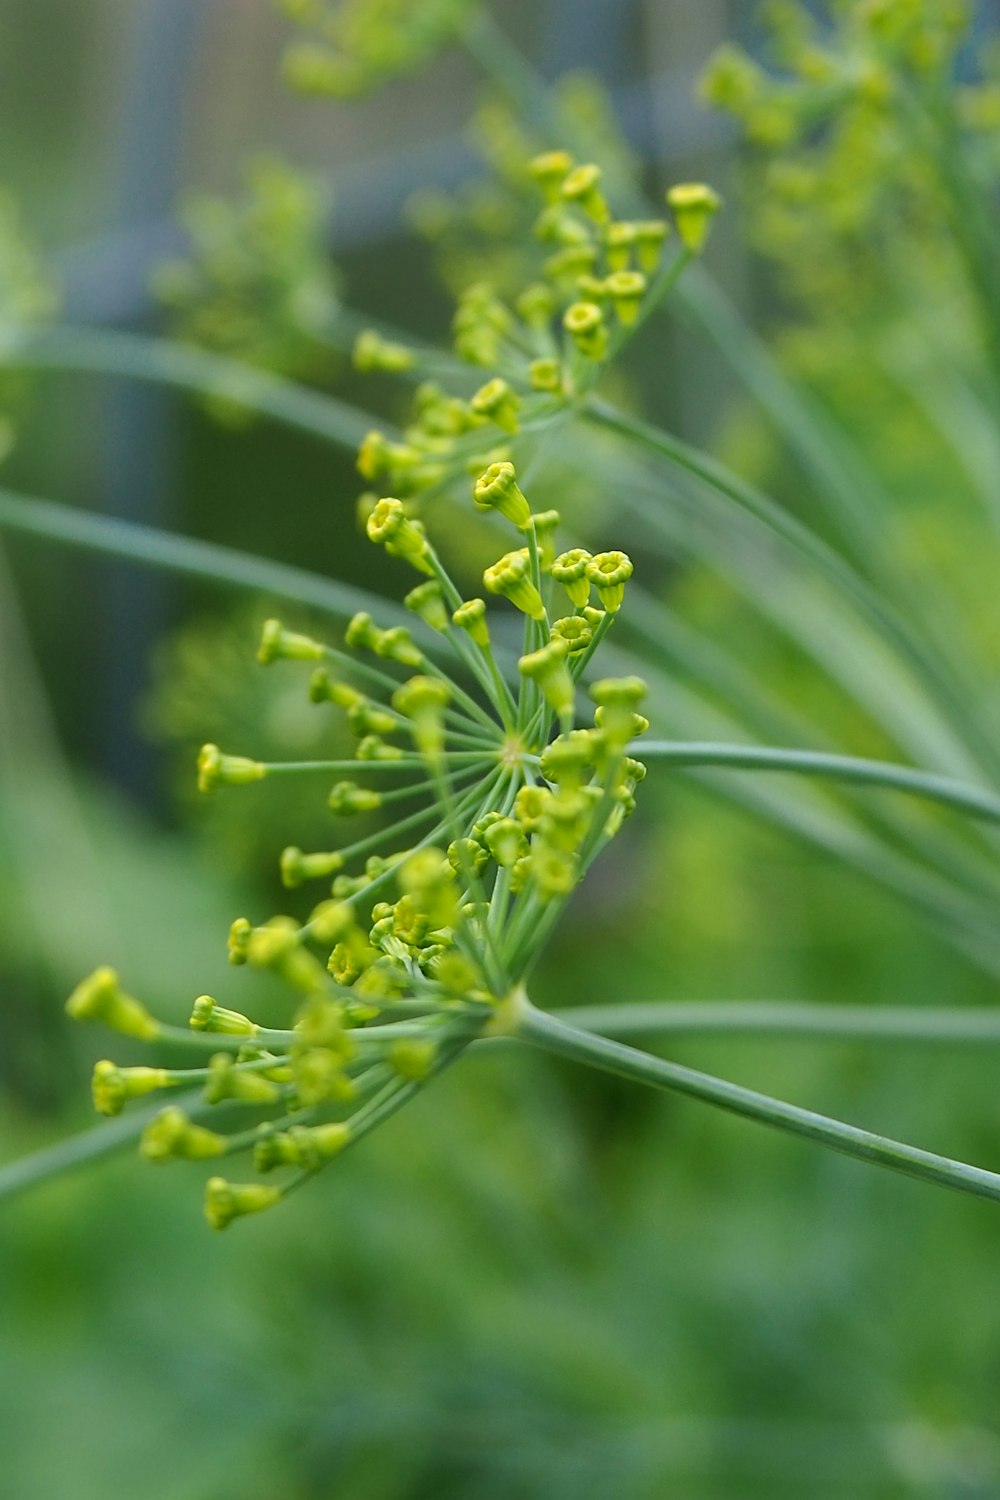 틸트 시프트 렌즈의 녹색 꽃